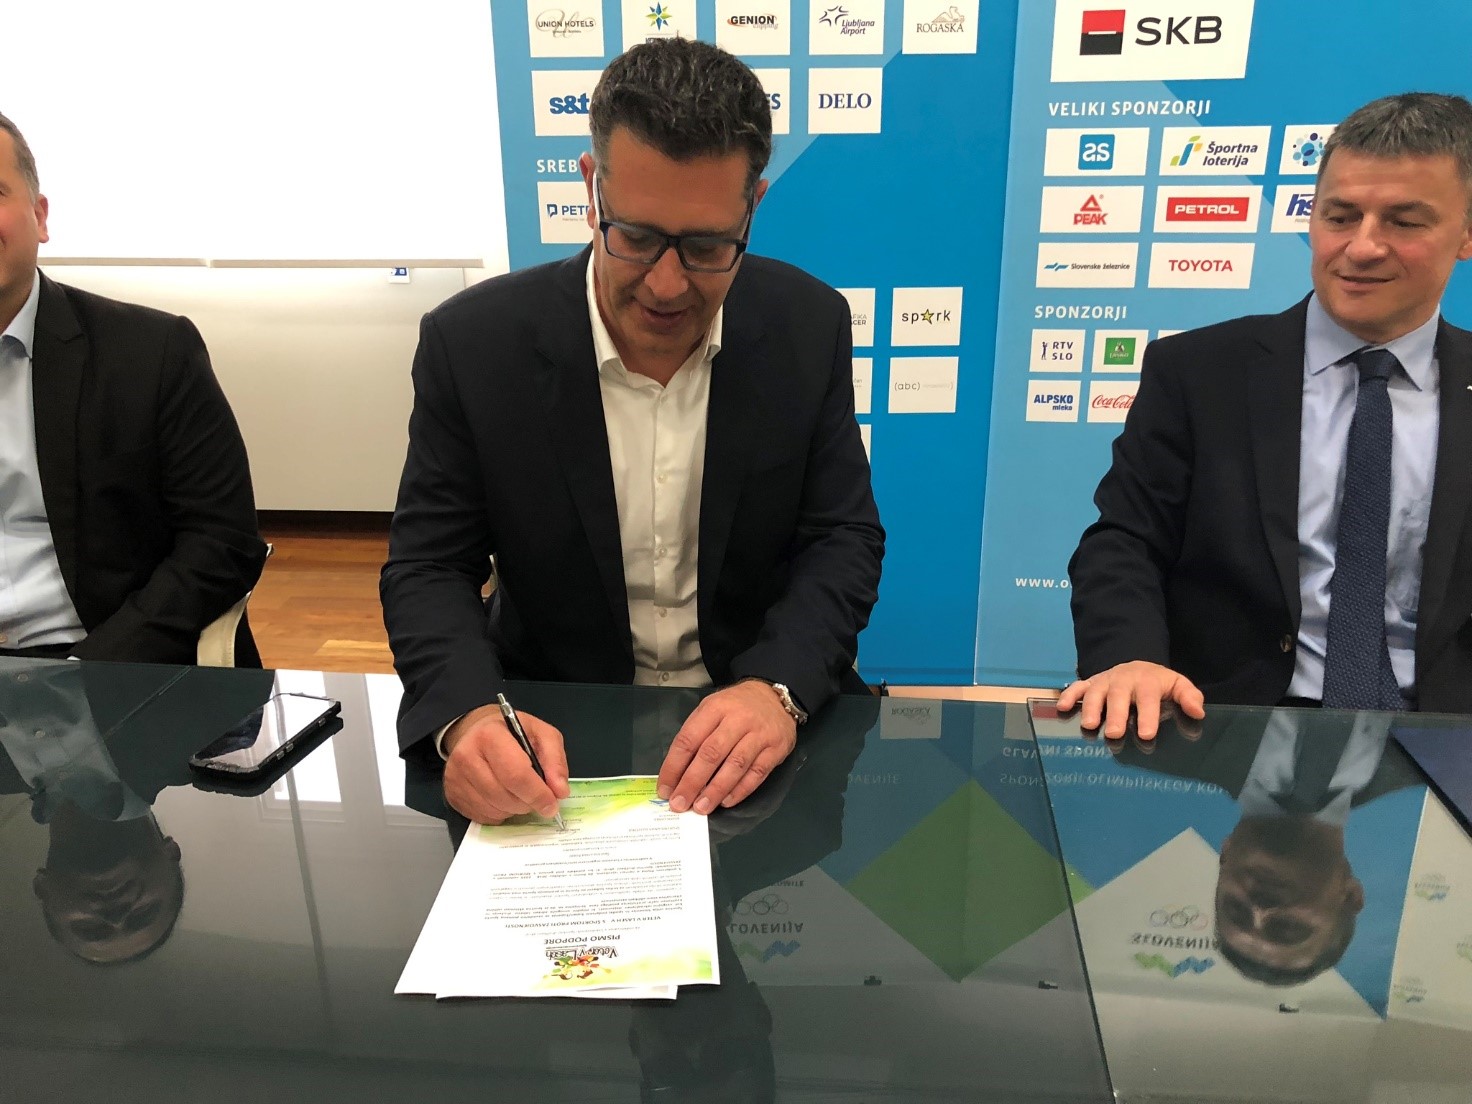 Podpis pogodbe med Olimpijskim komitejem Slovenije – Združenjem športnih zvez in Športno zvezo Koper